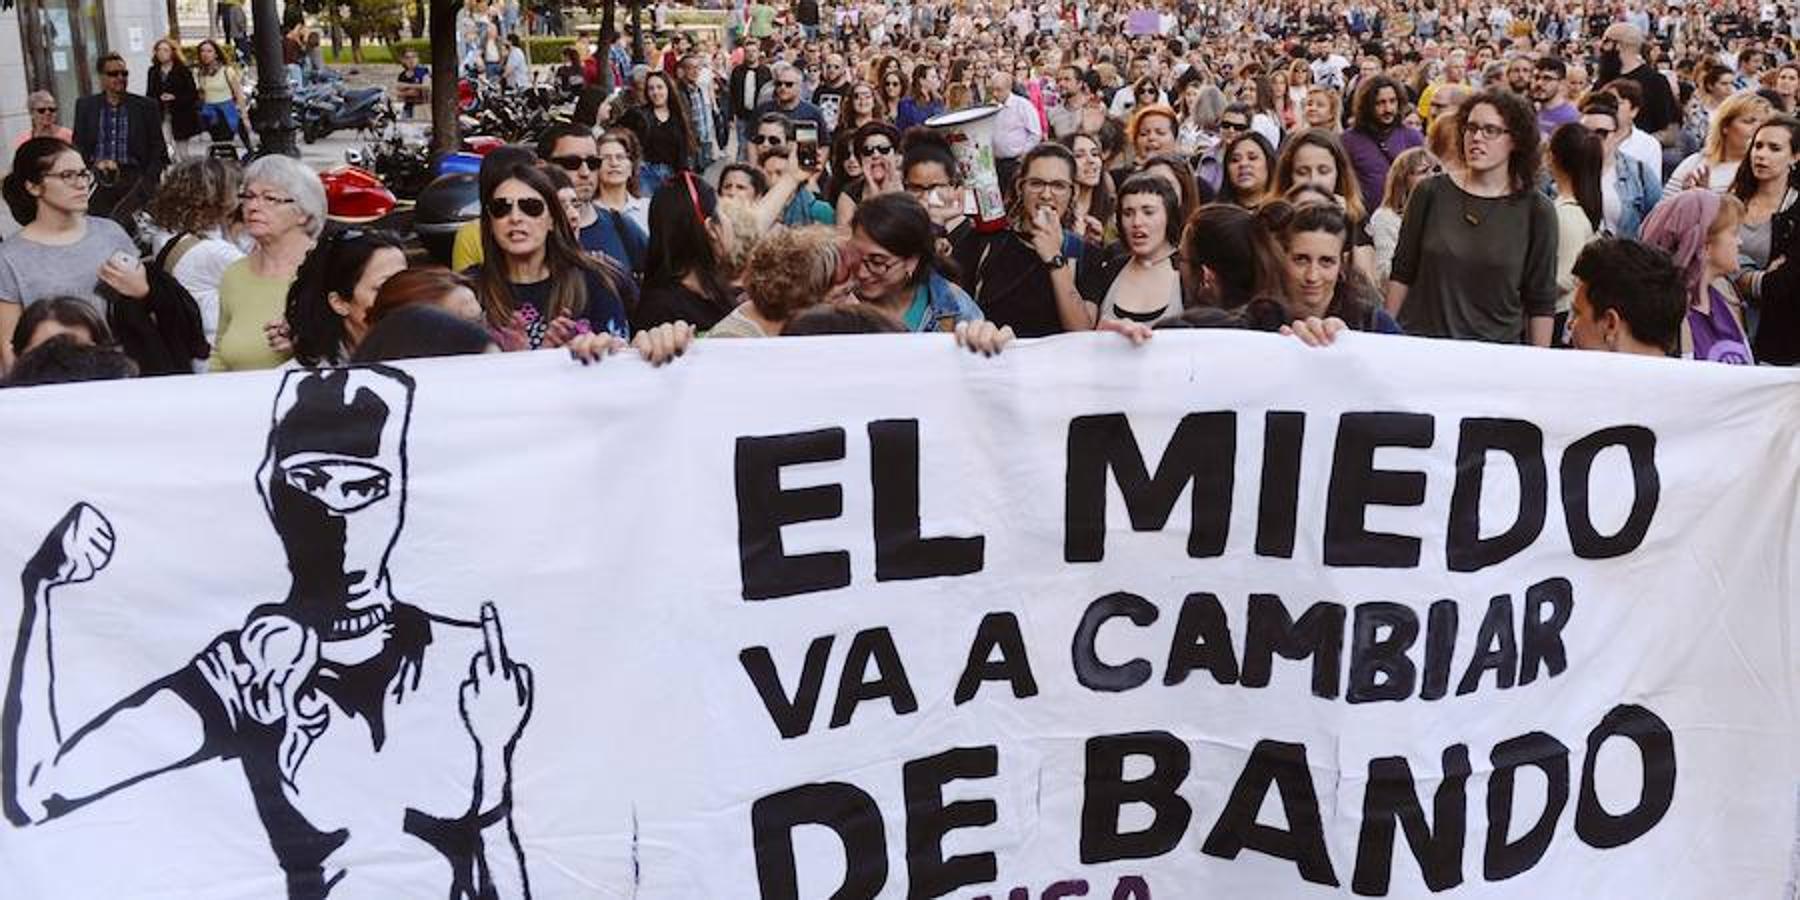 Manfestación convocada esta tarde en Valladolid.. 